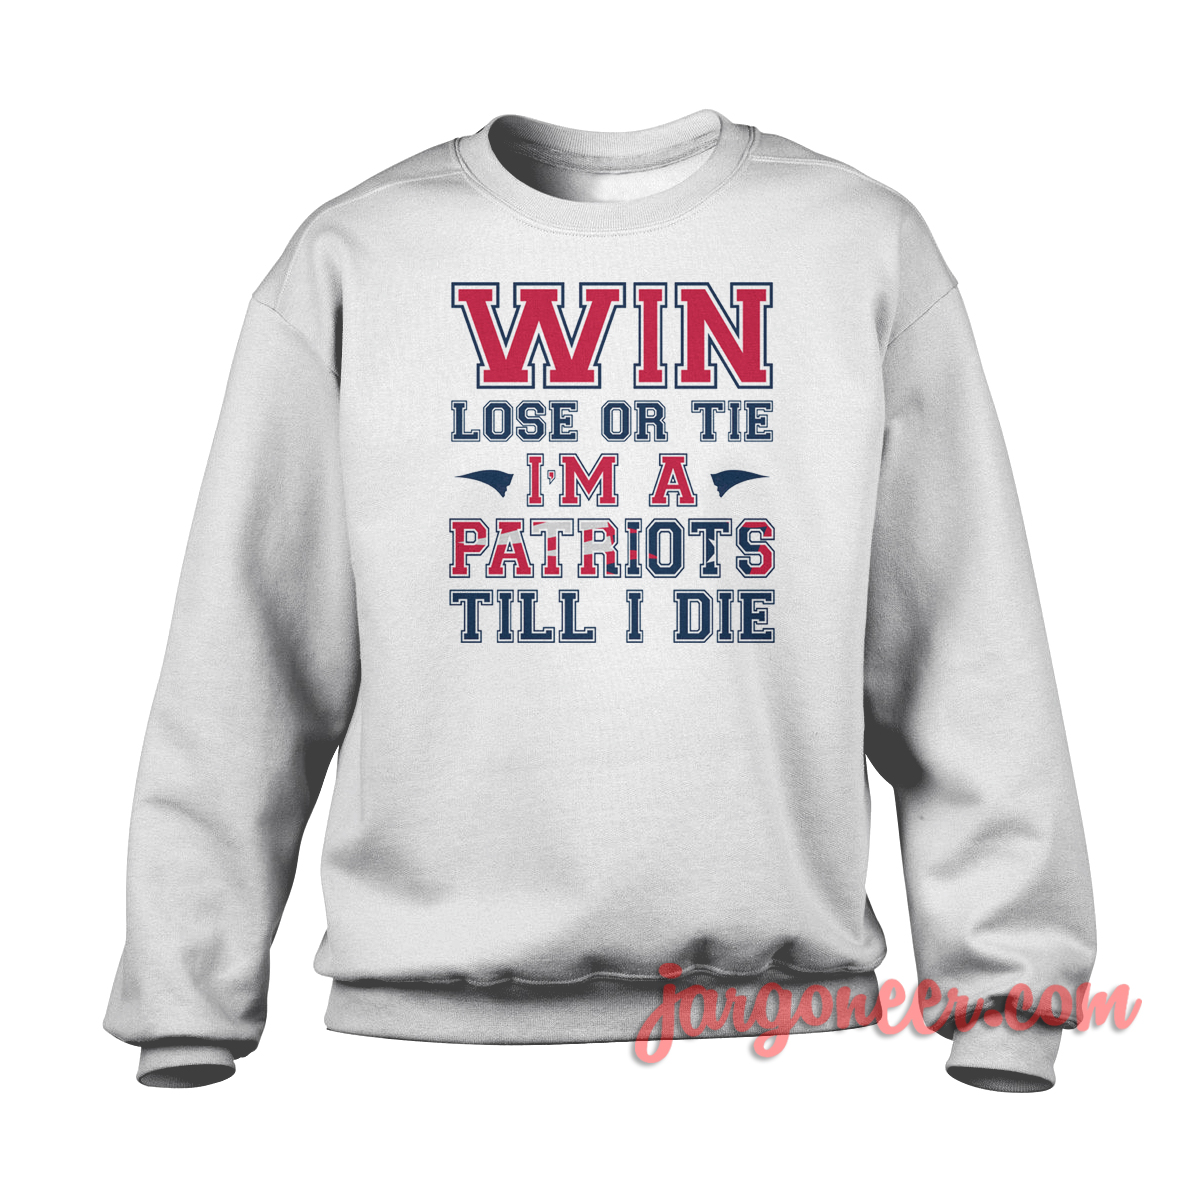 Patriots Fans - Shop Unique Graphic Cool Shirt Designs